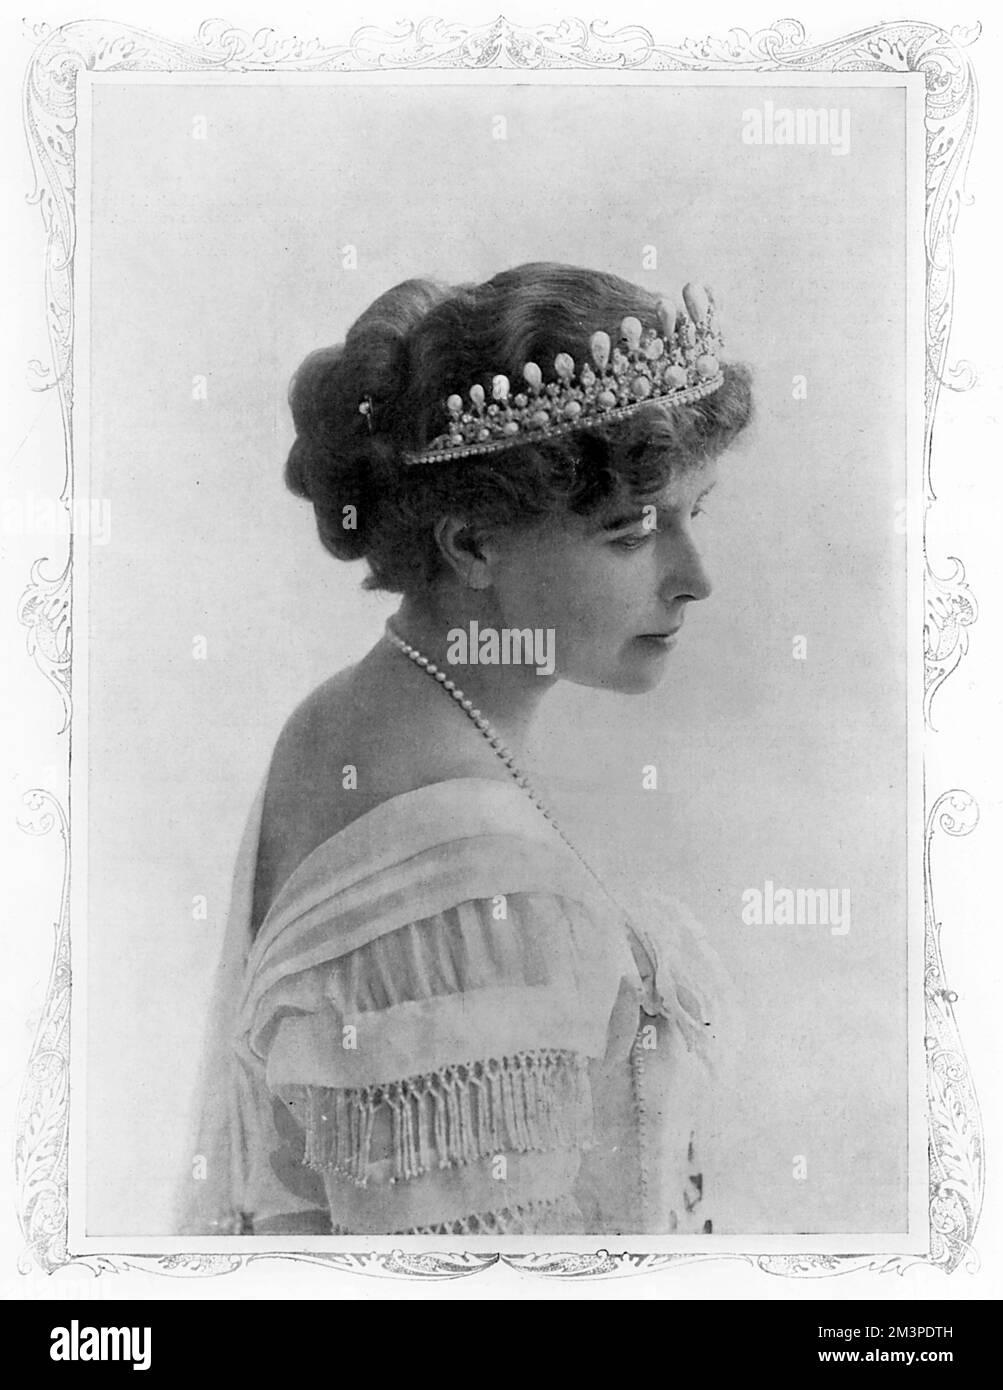 La reine Marie de Roumanie (1875 - 1938), consort du roi Ferdinand I de Roumanie, récemment couronné en 1914. Date: 1914 Banque D'Images